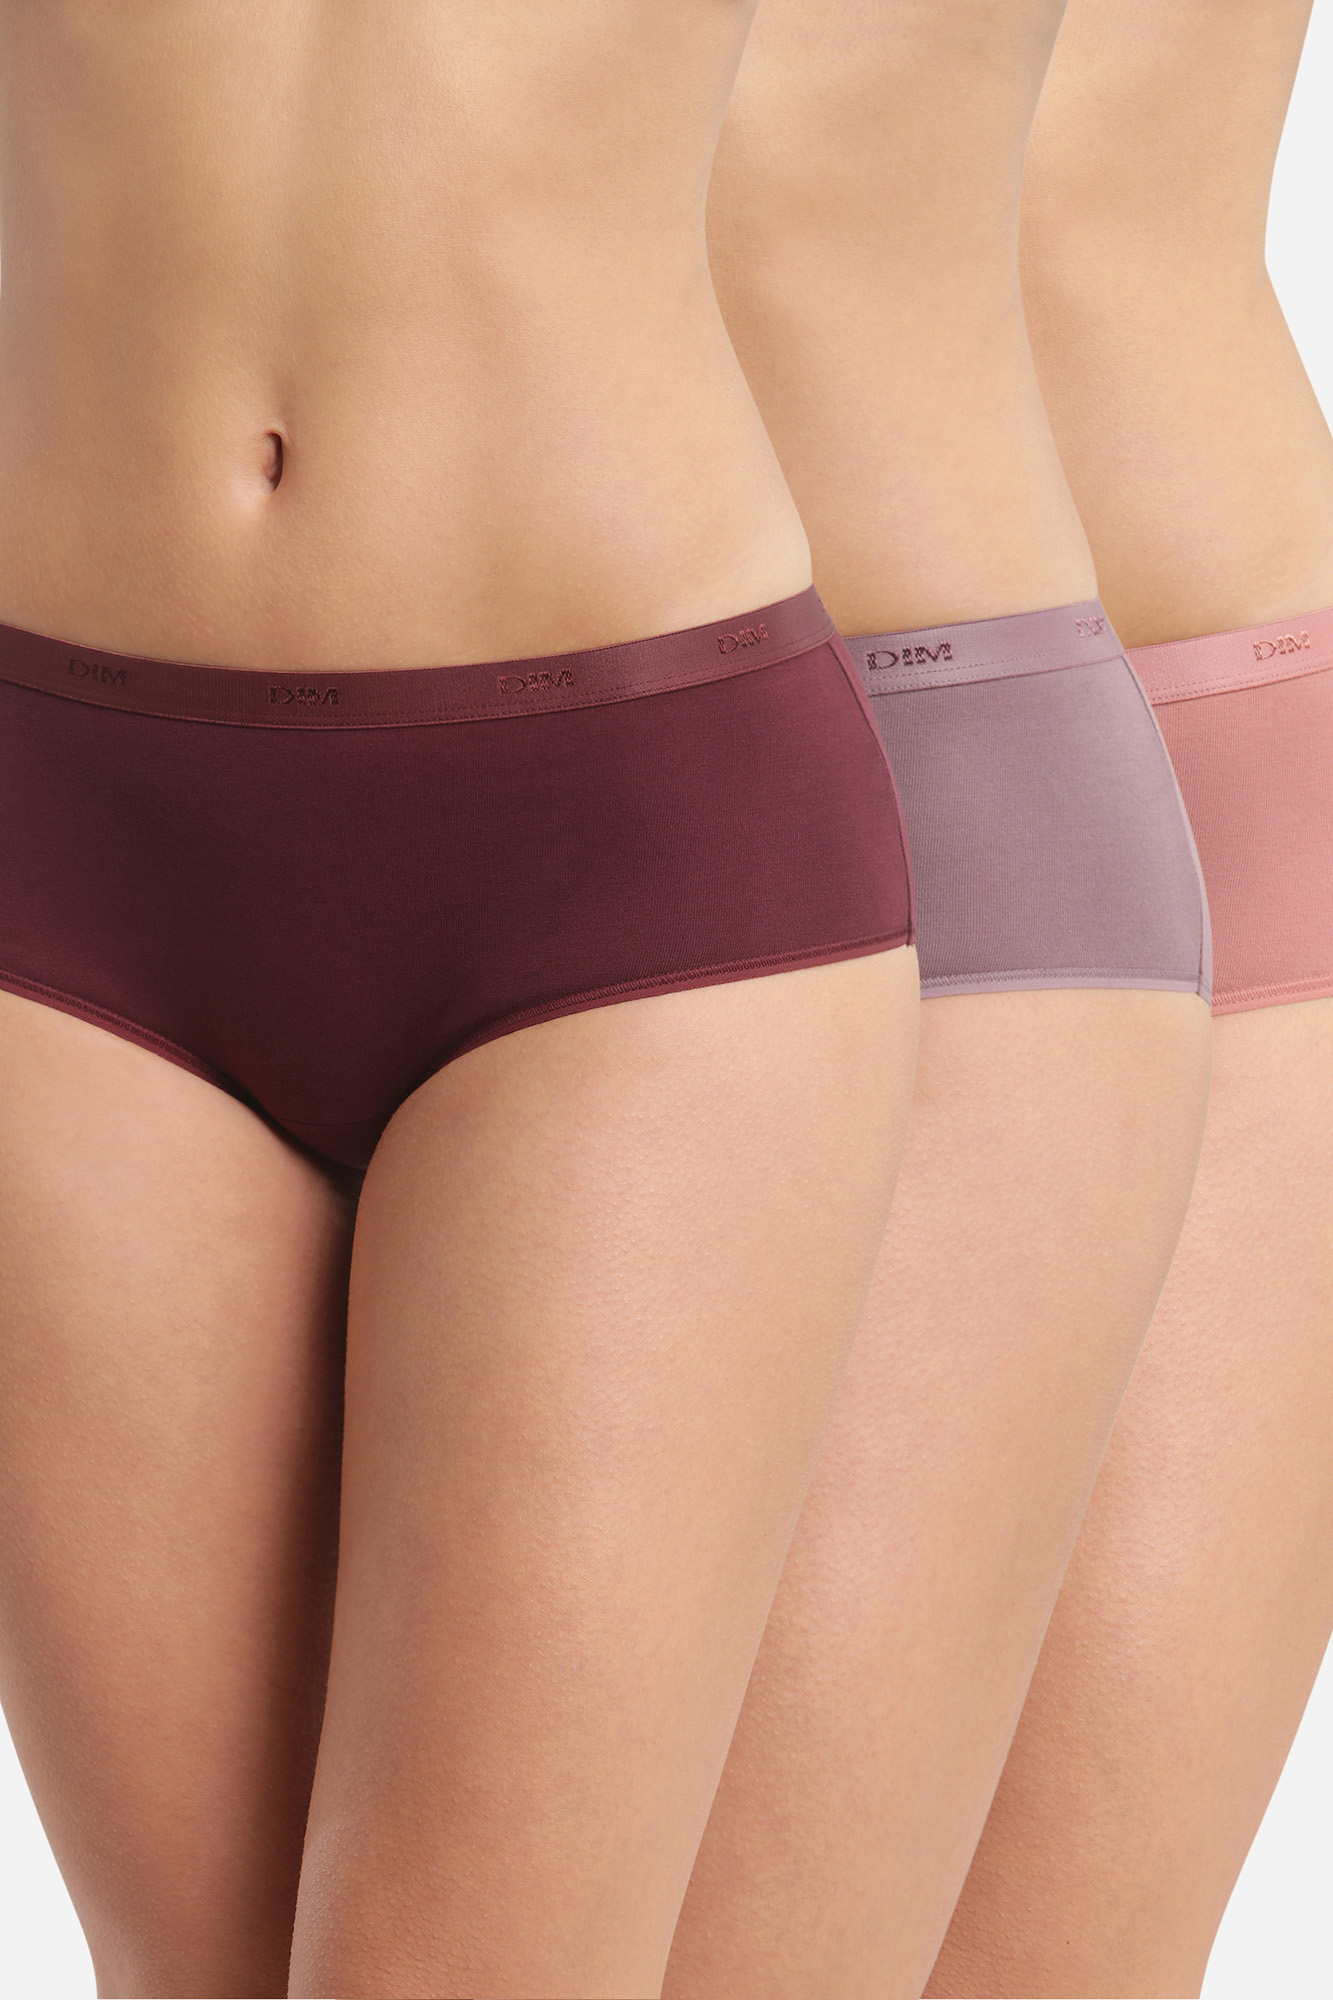 Snocks Unterhosen Damen Unterwäsche Frauen Brazilian Slip 3er Pack